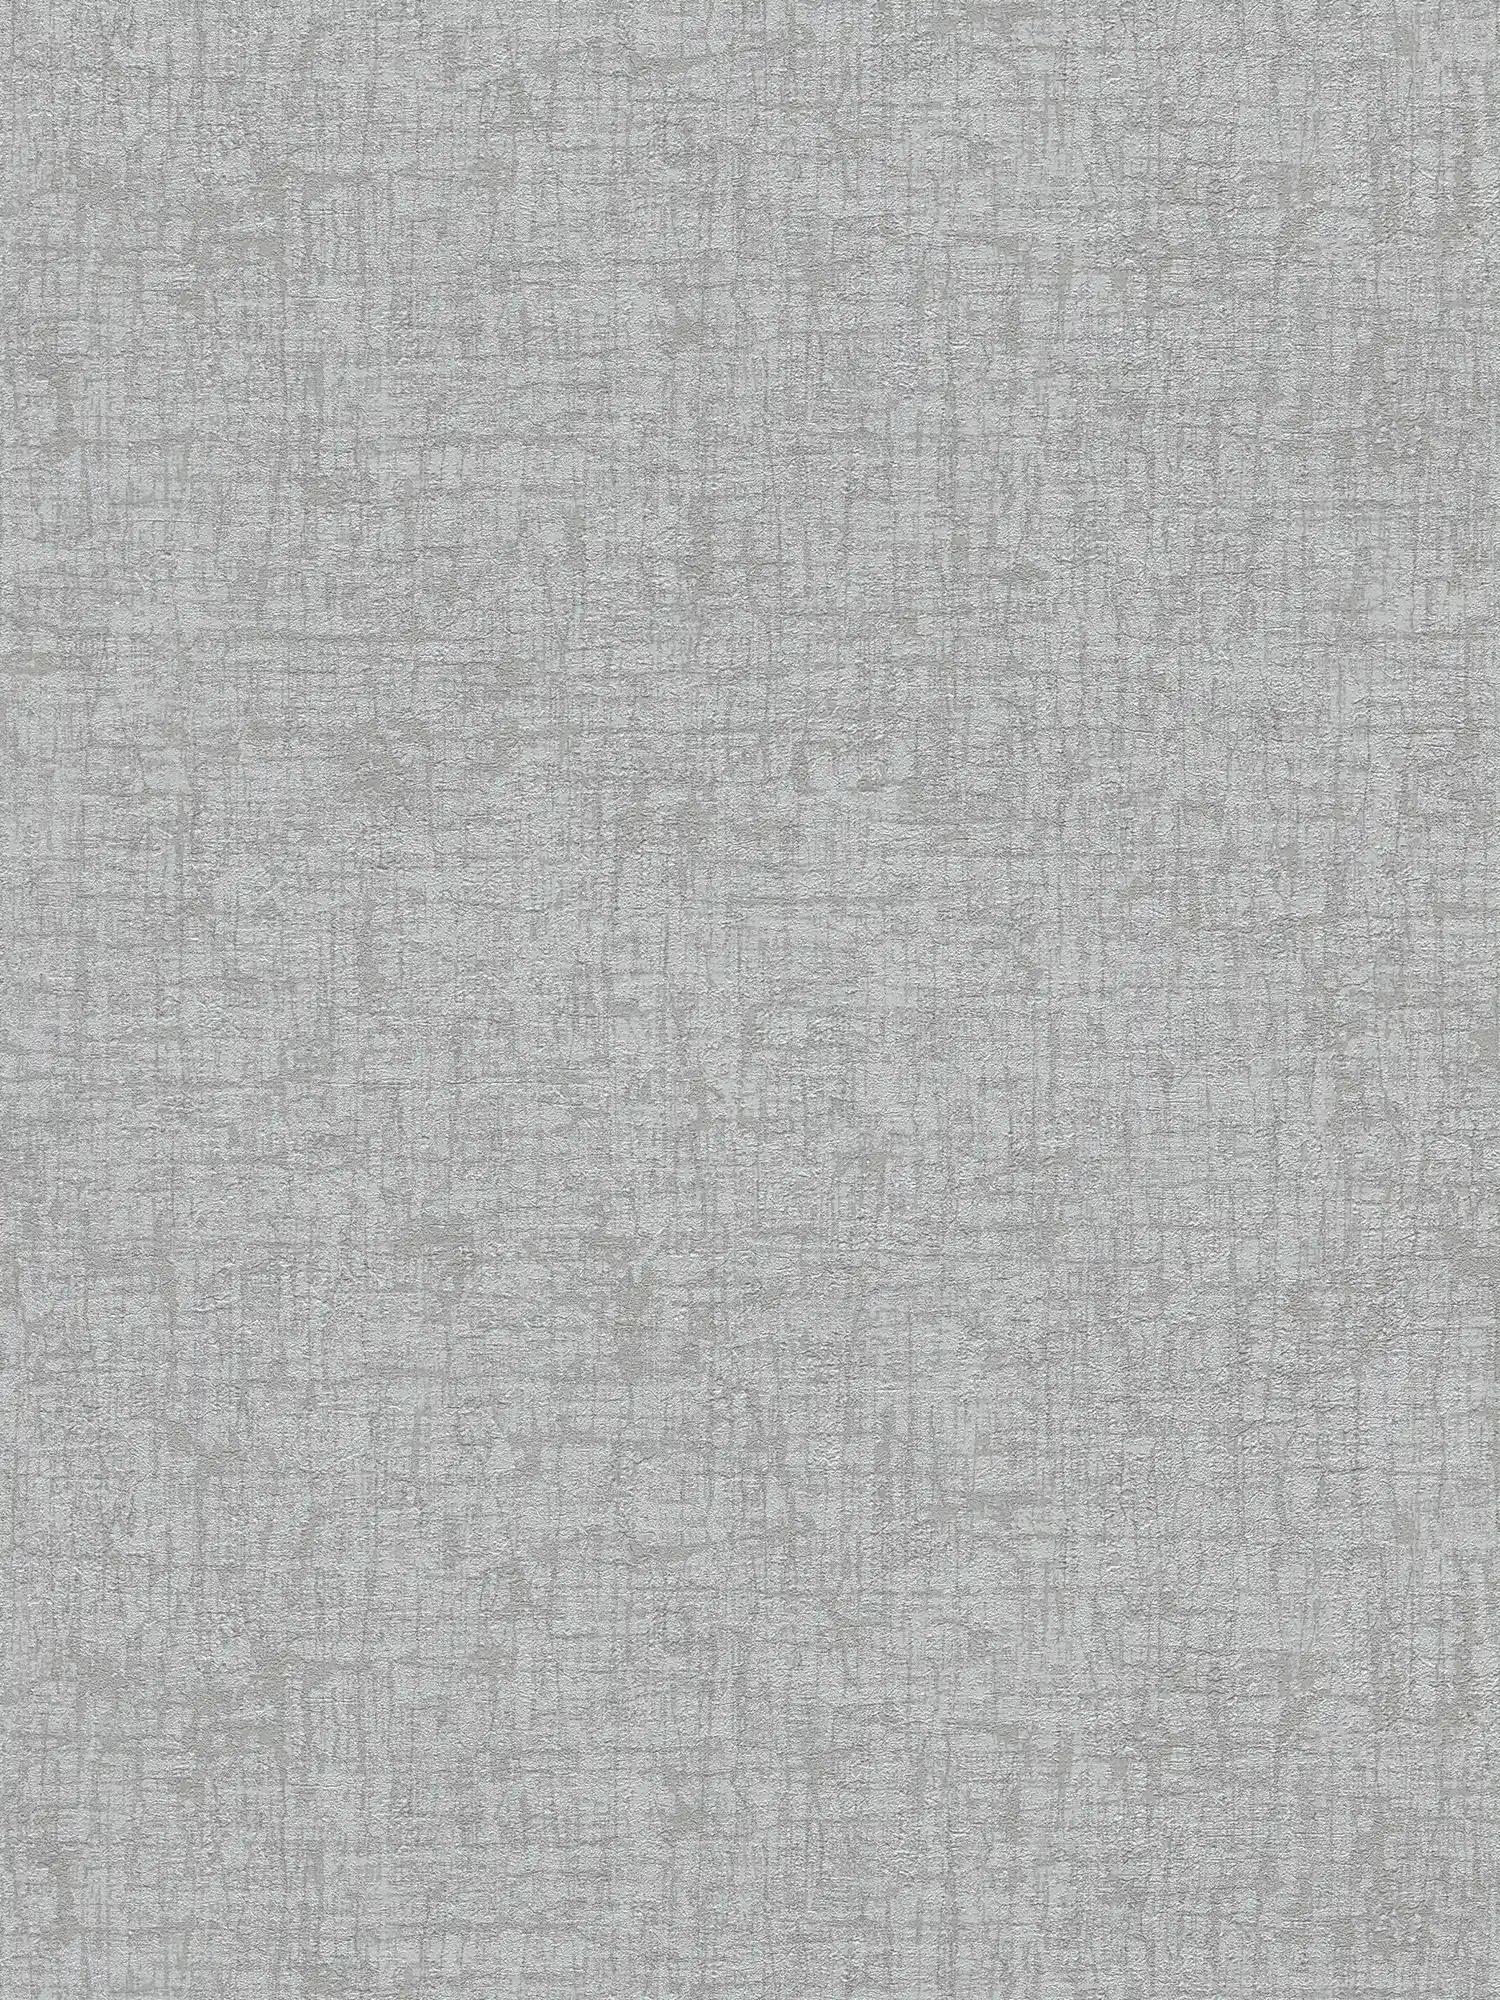         Carta da parati non tessuta con aspetto tessile leggermente lucido - grigio, grigio scuro
    